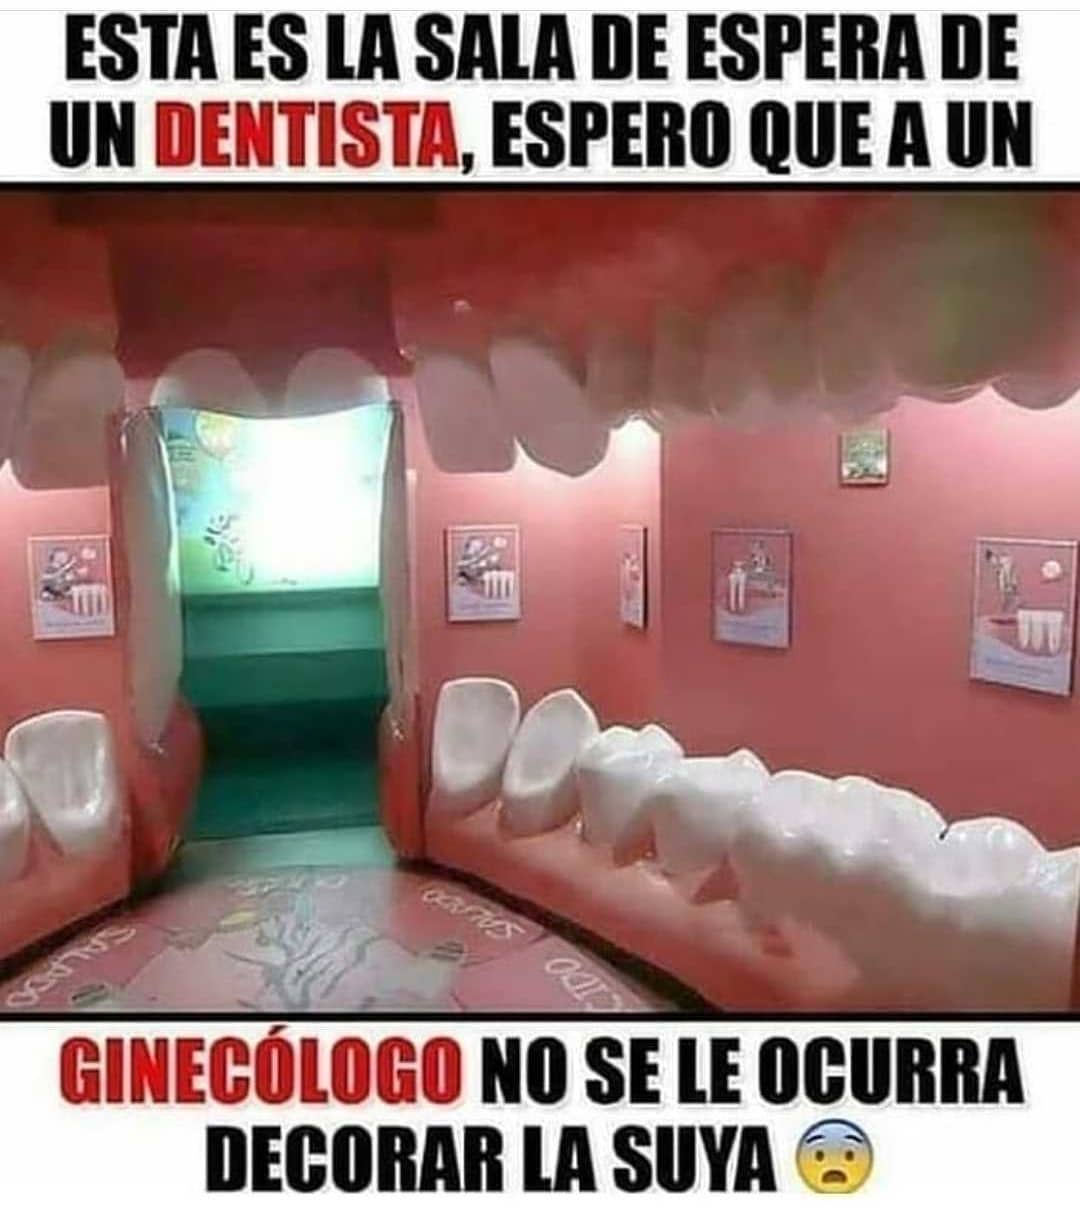 Esta es la sala de espera de un dentista, espero que a un ginecólogo no se le ocurra decorar la suya.